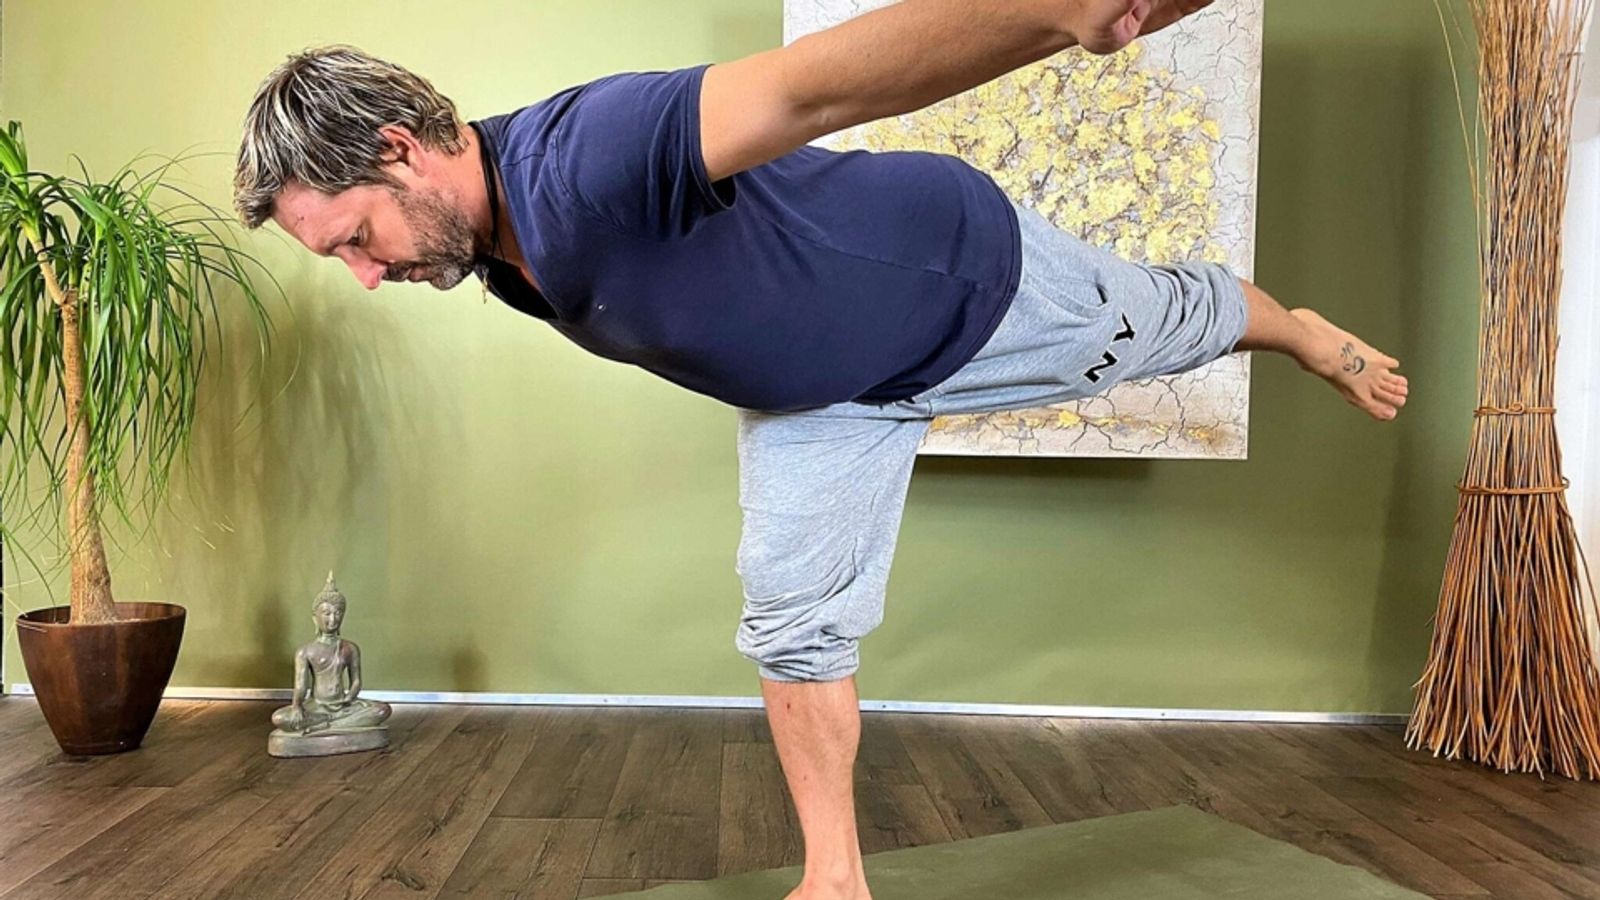 A Hata Yoga Class - focus on balance and strength